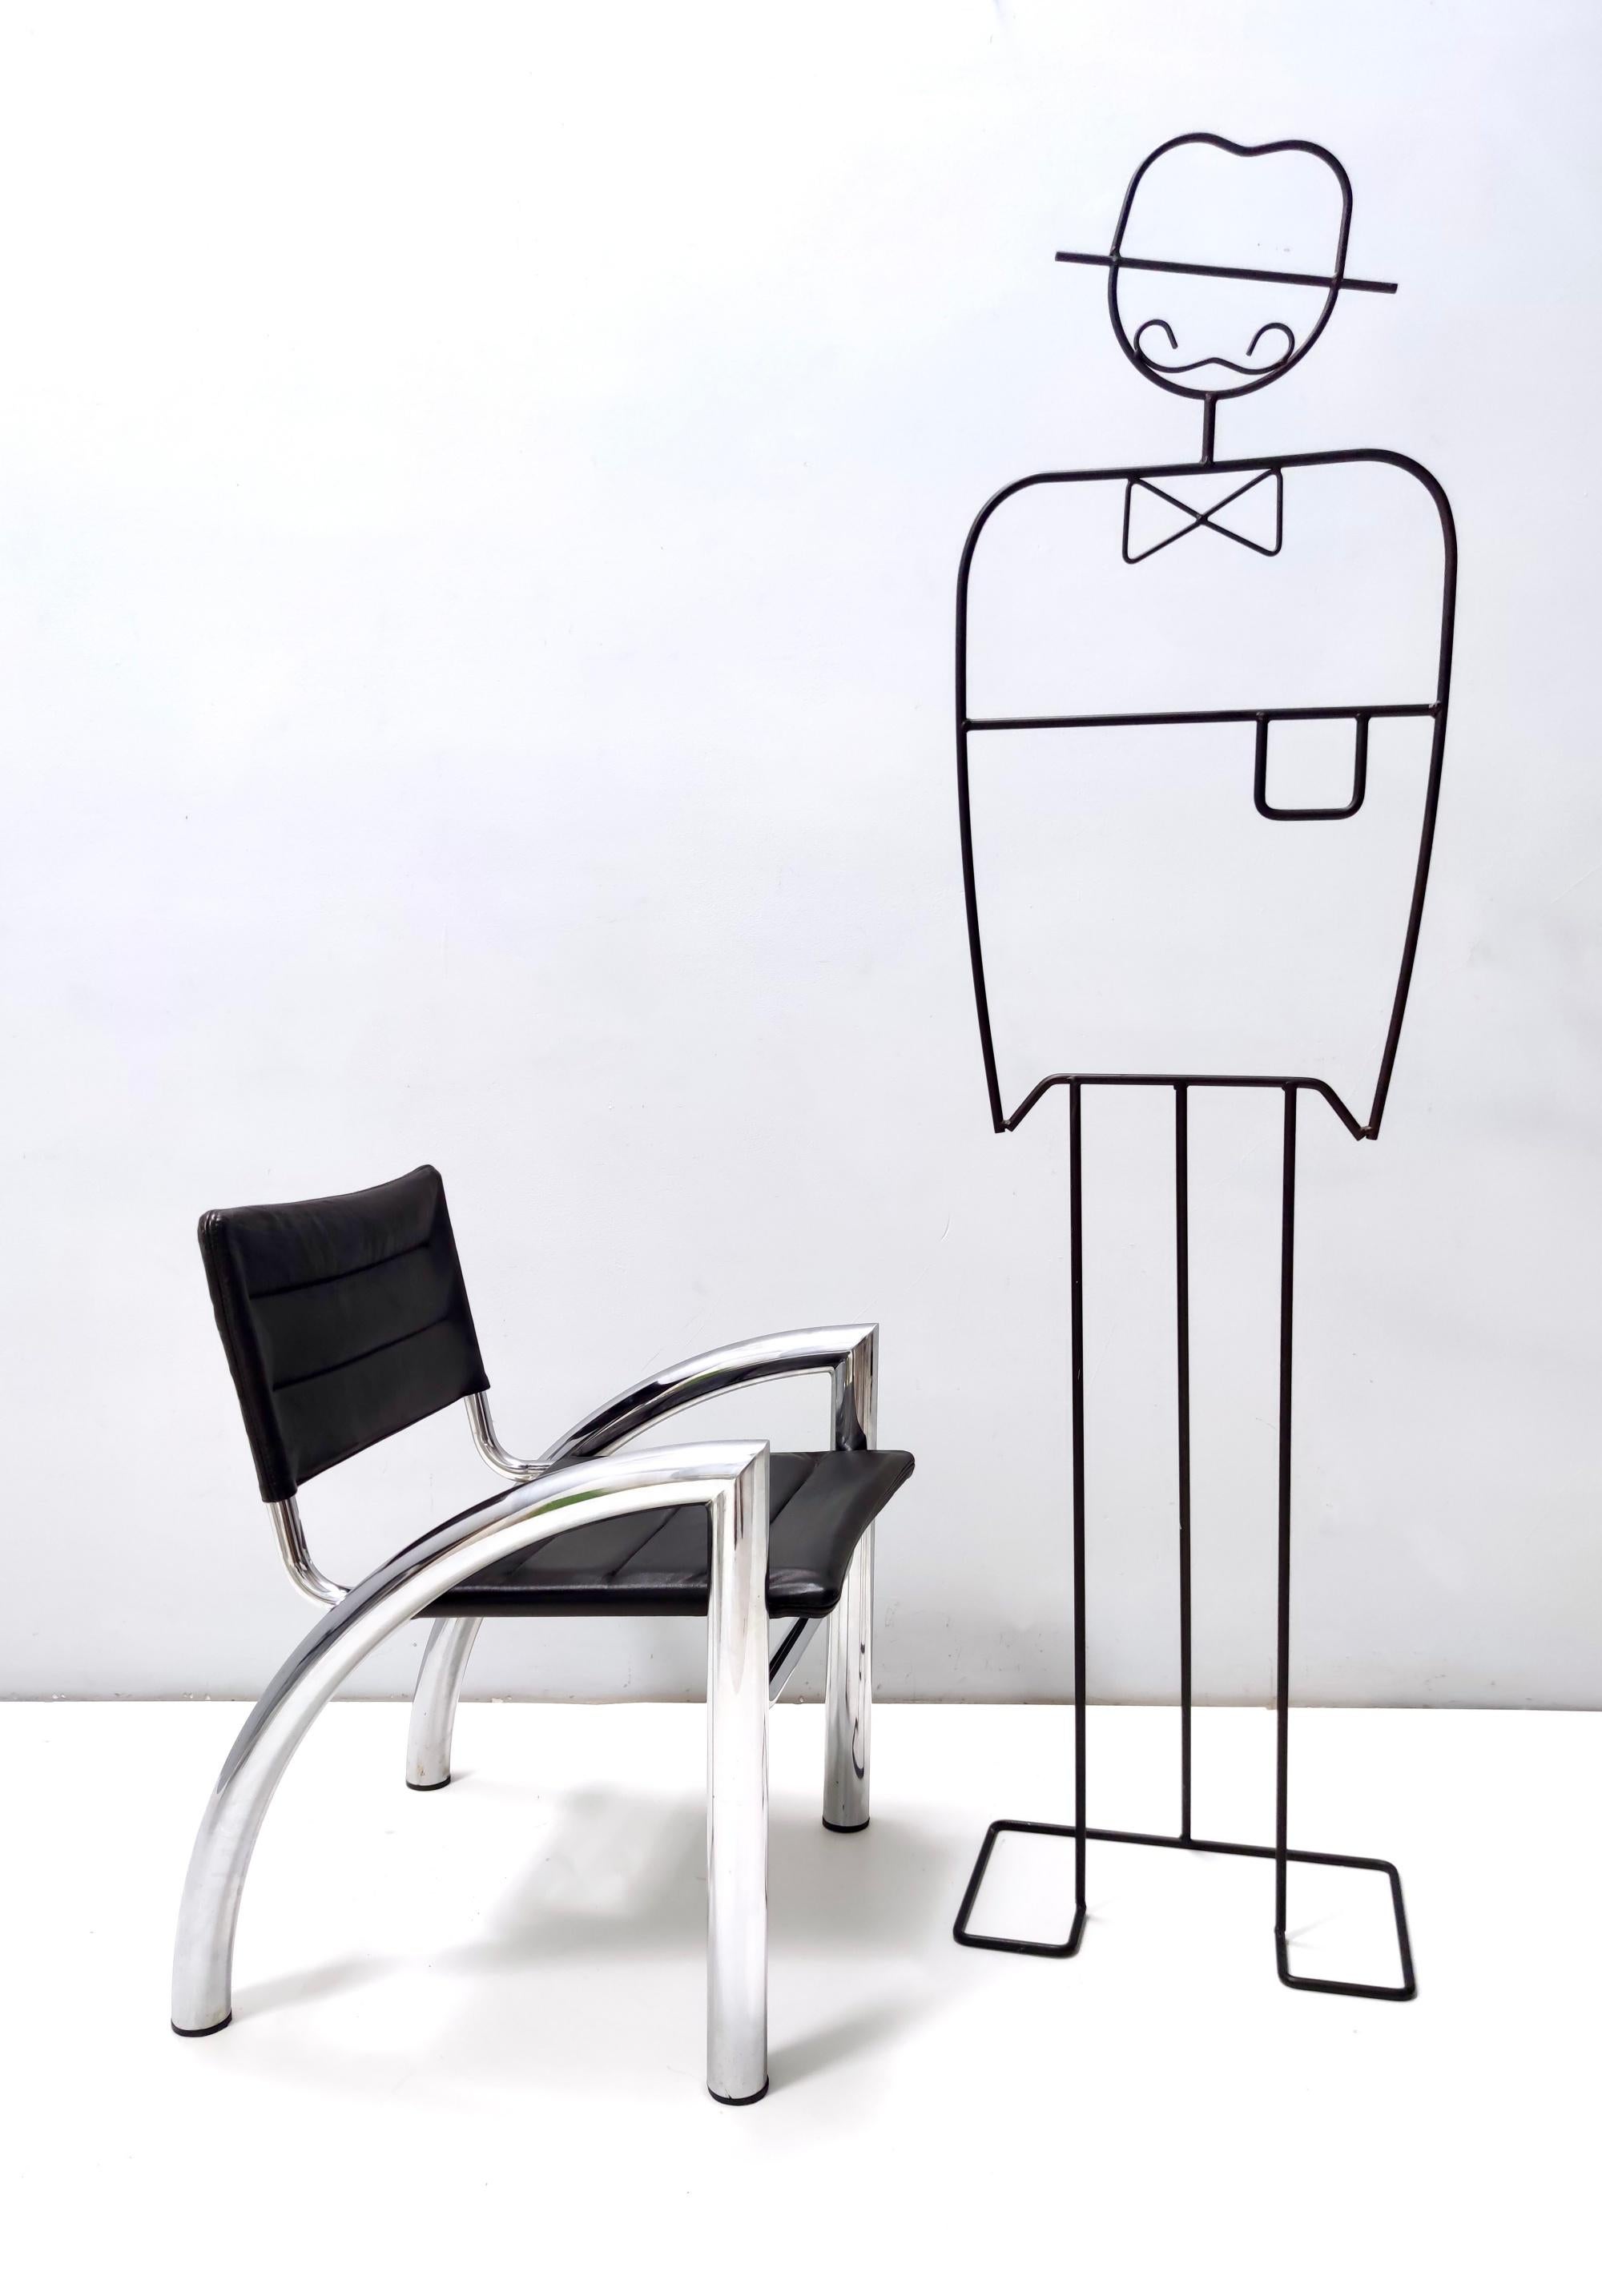 Hergestellt in Italien, 1976.
Dies ist das Modell Cassiopea, entworfen von Gae Aulenti für Elam, Meda.
Diese Stühle bestehen aus einem verchromten Stahlrohrgestell und Sitz und Rückenlehne aus Leder.
Da es sich um Vintage-Produkte handelt, können